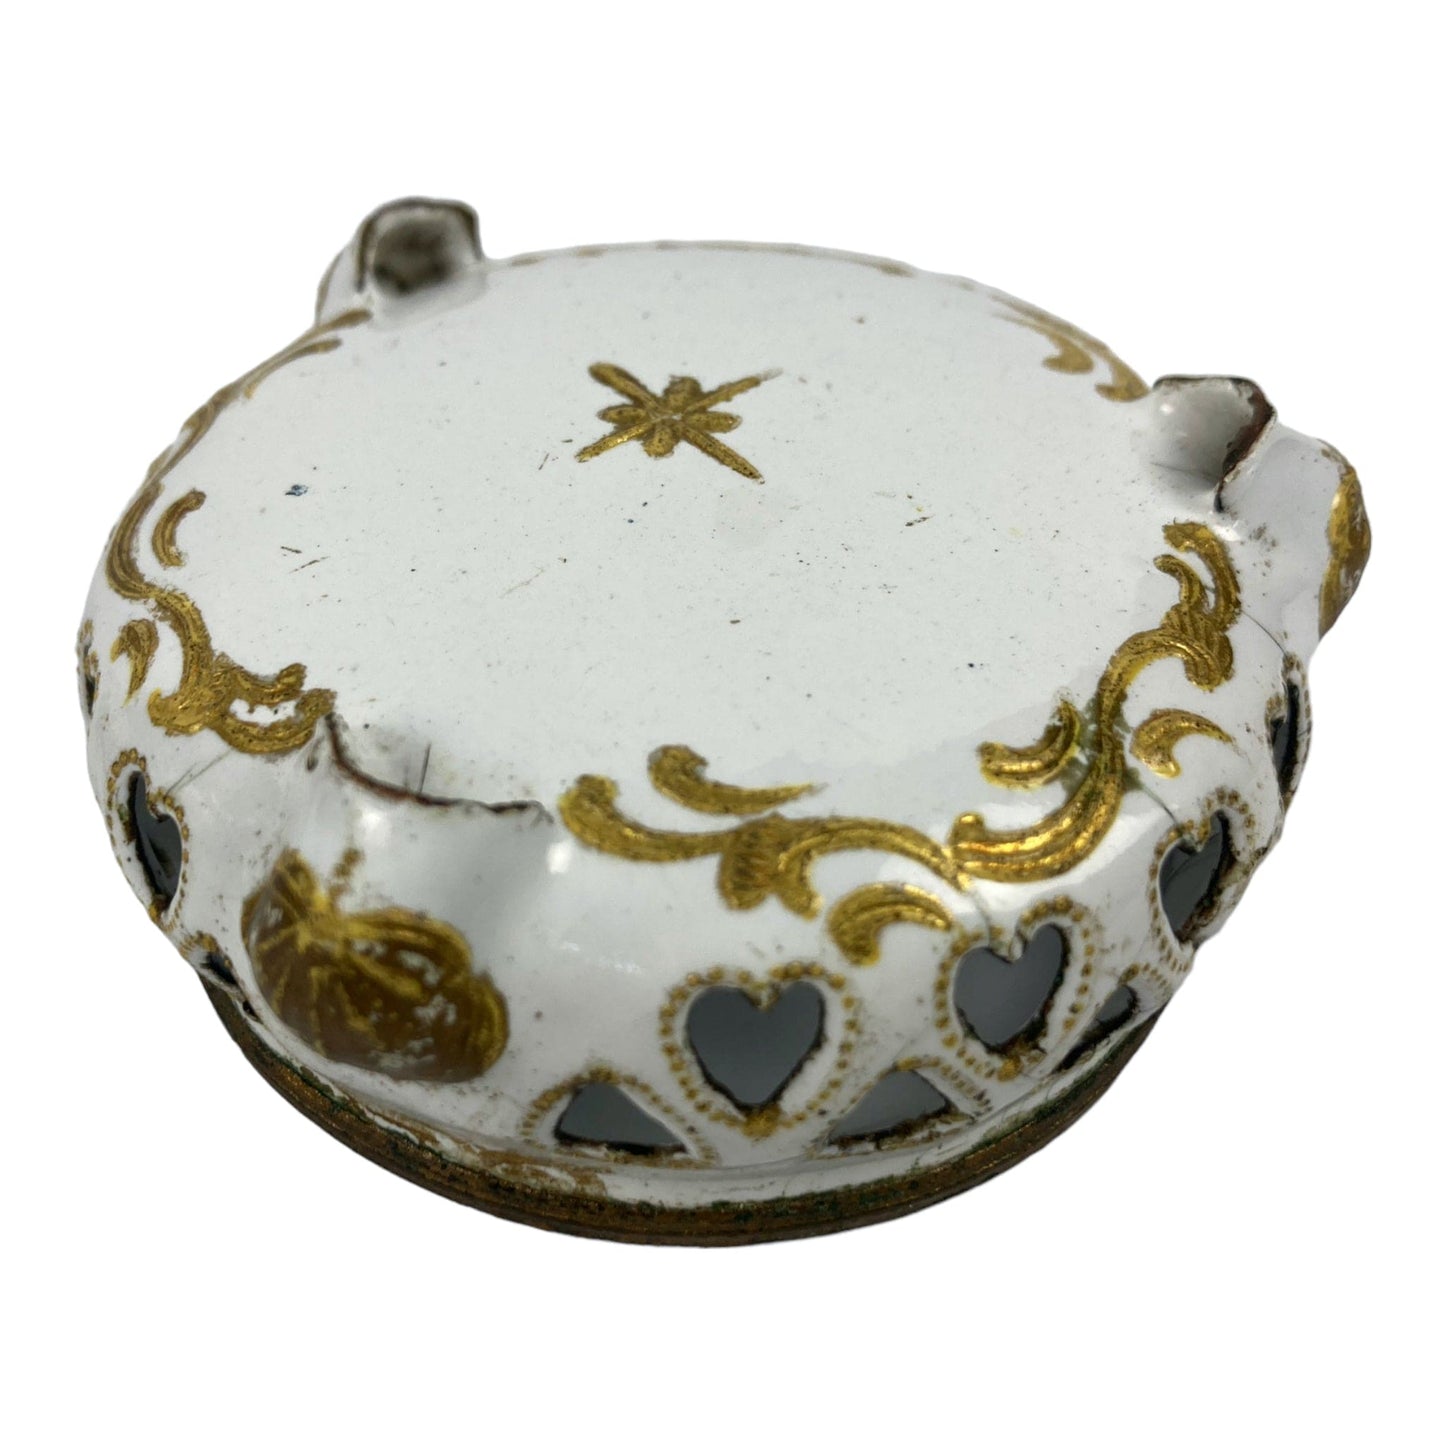 Баттерси, 18 век. Пара столовых сервизов из эмалированной меди белого и золотого цвета, приправы, солонки.